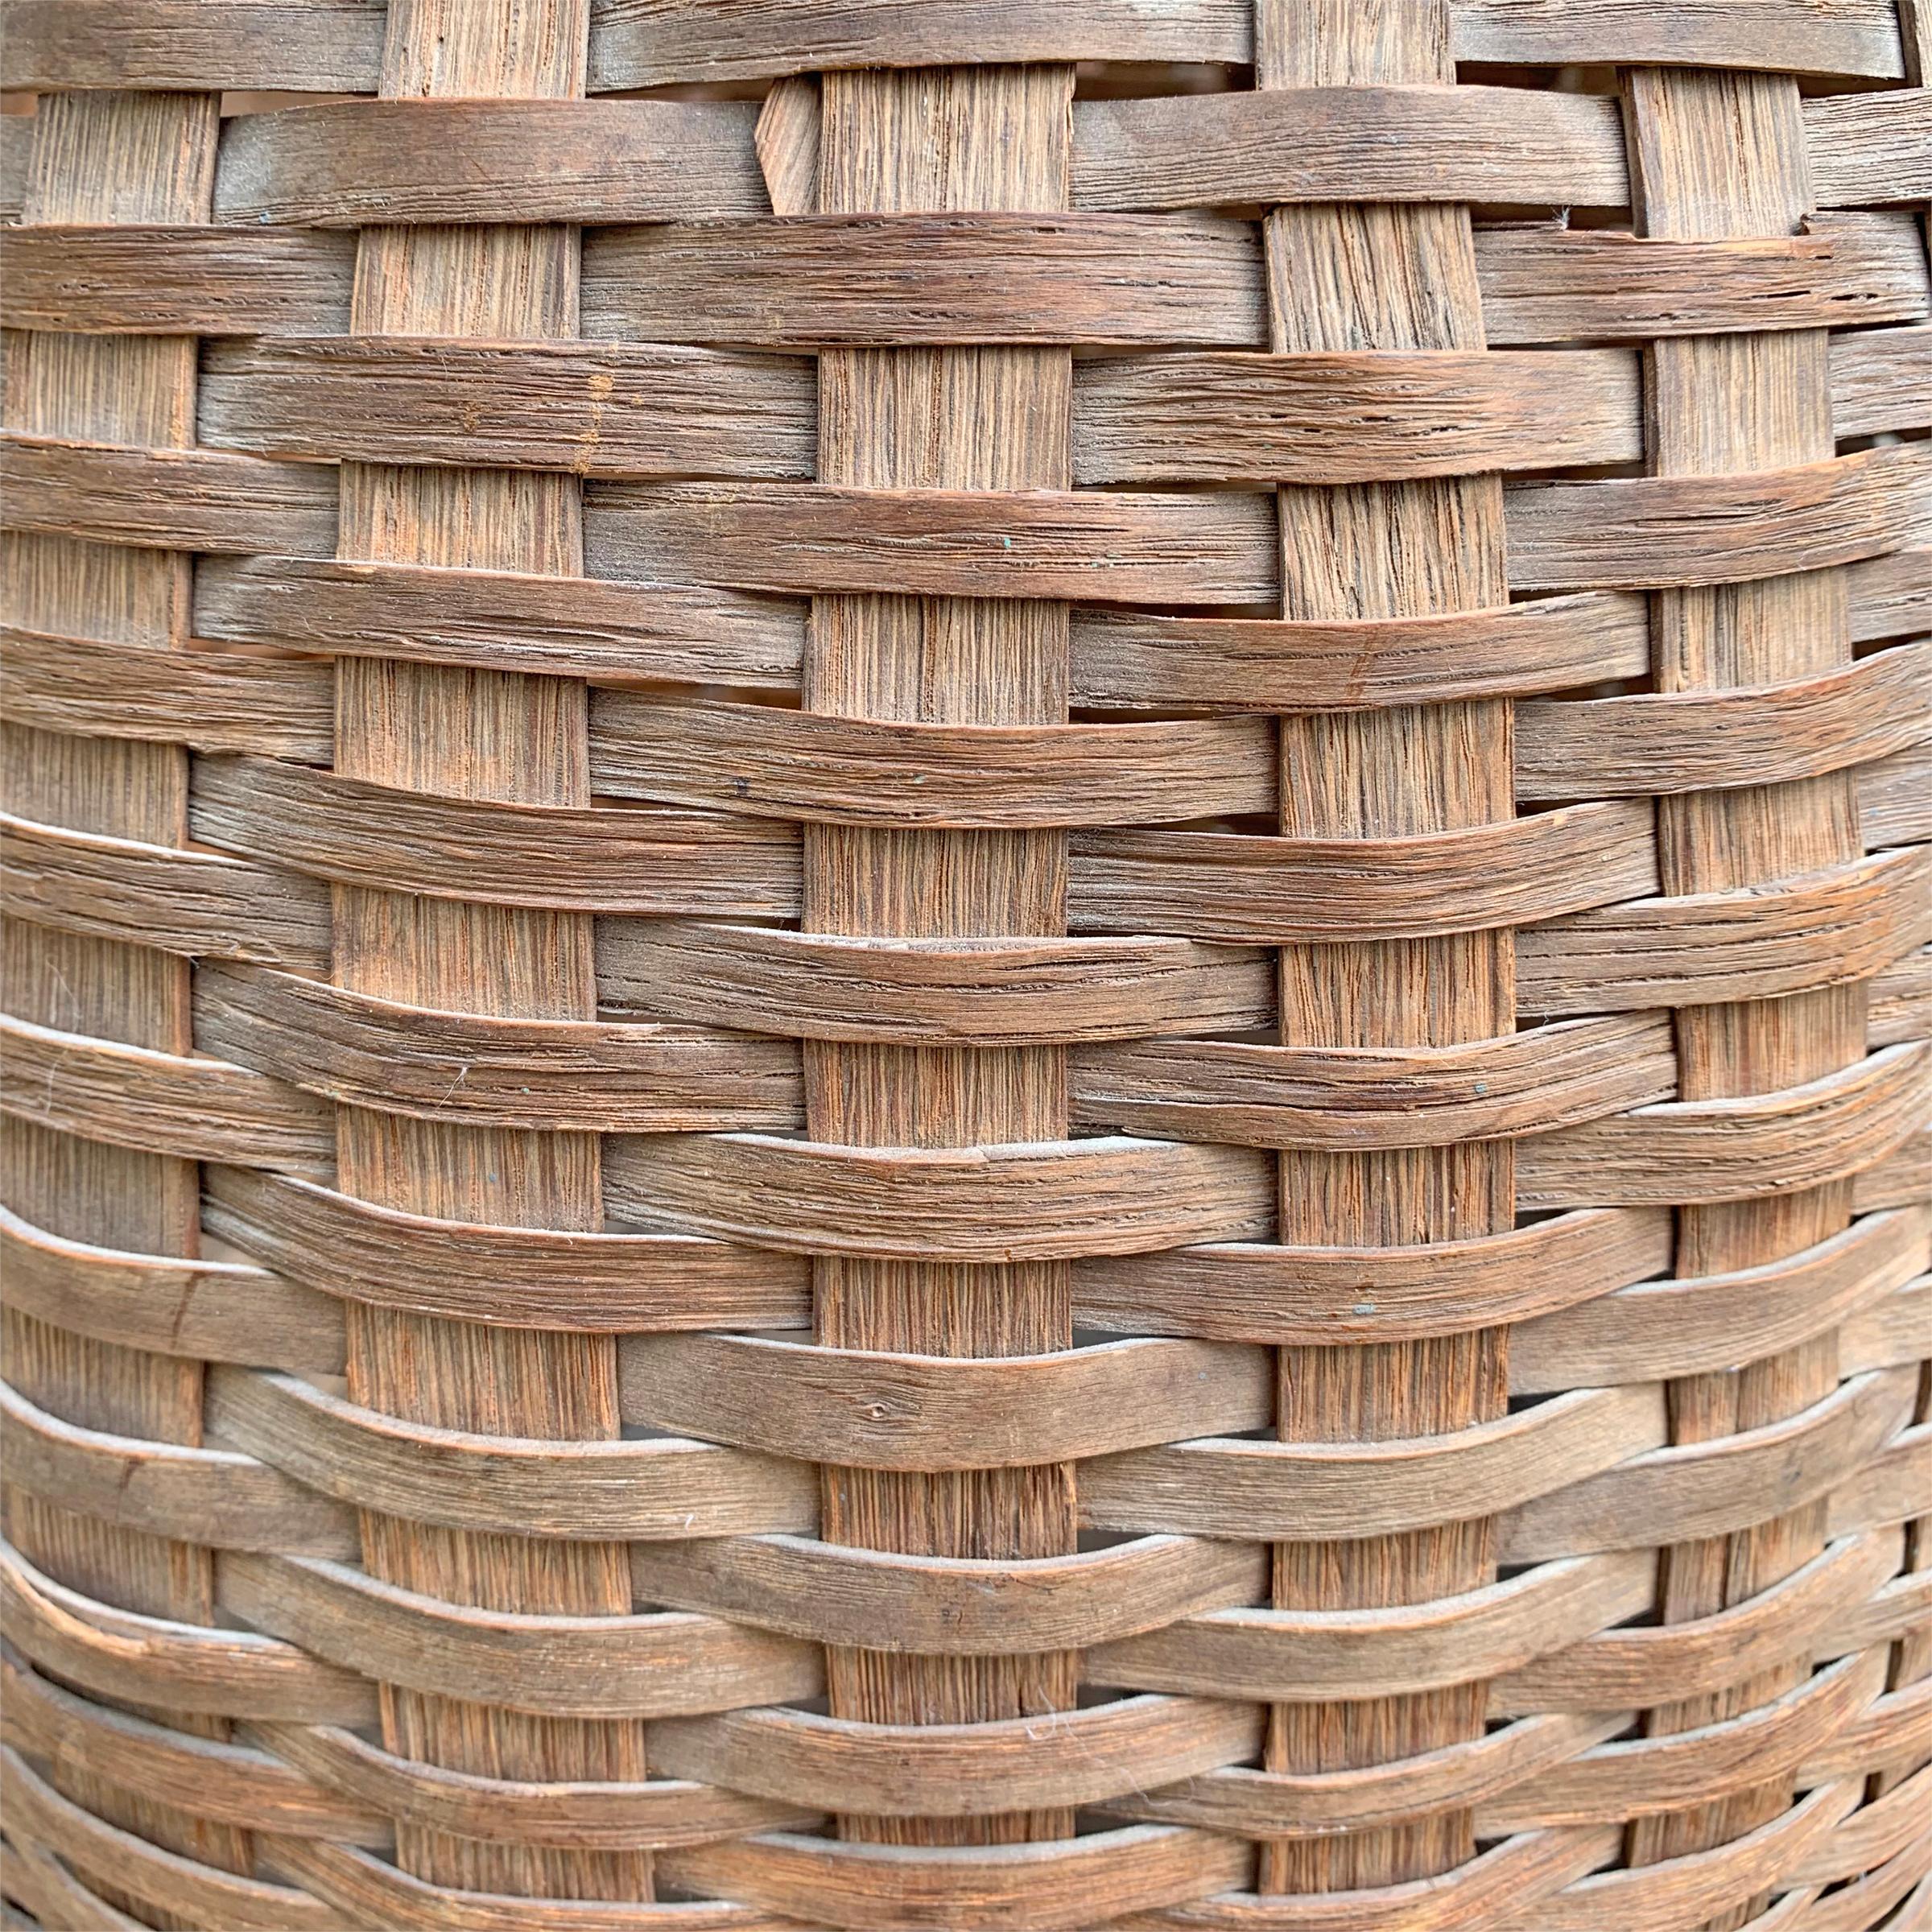 Hand-Woven 19th Century American Oak Splint Basket